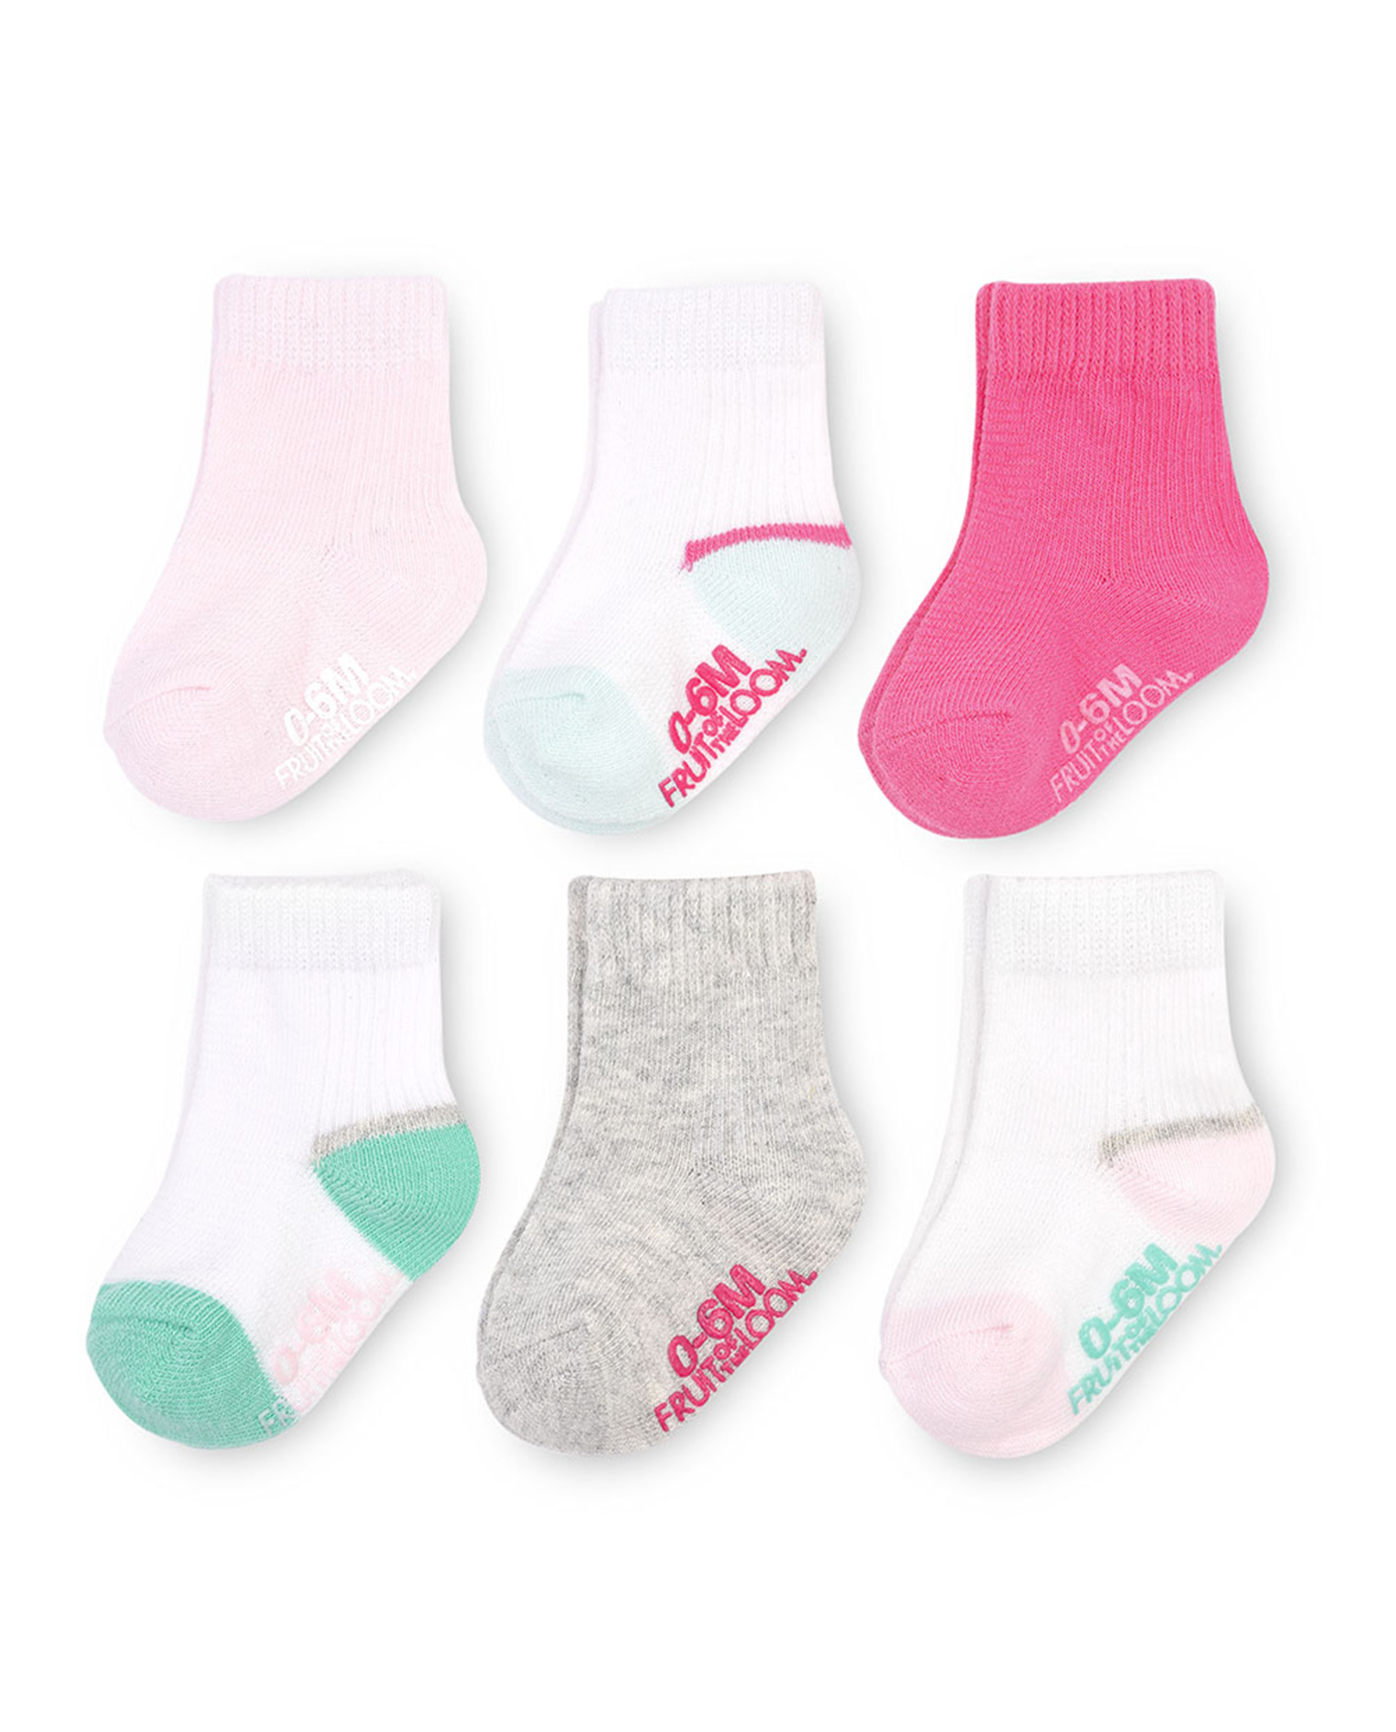 rubber bottom socks for babies